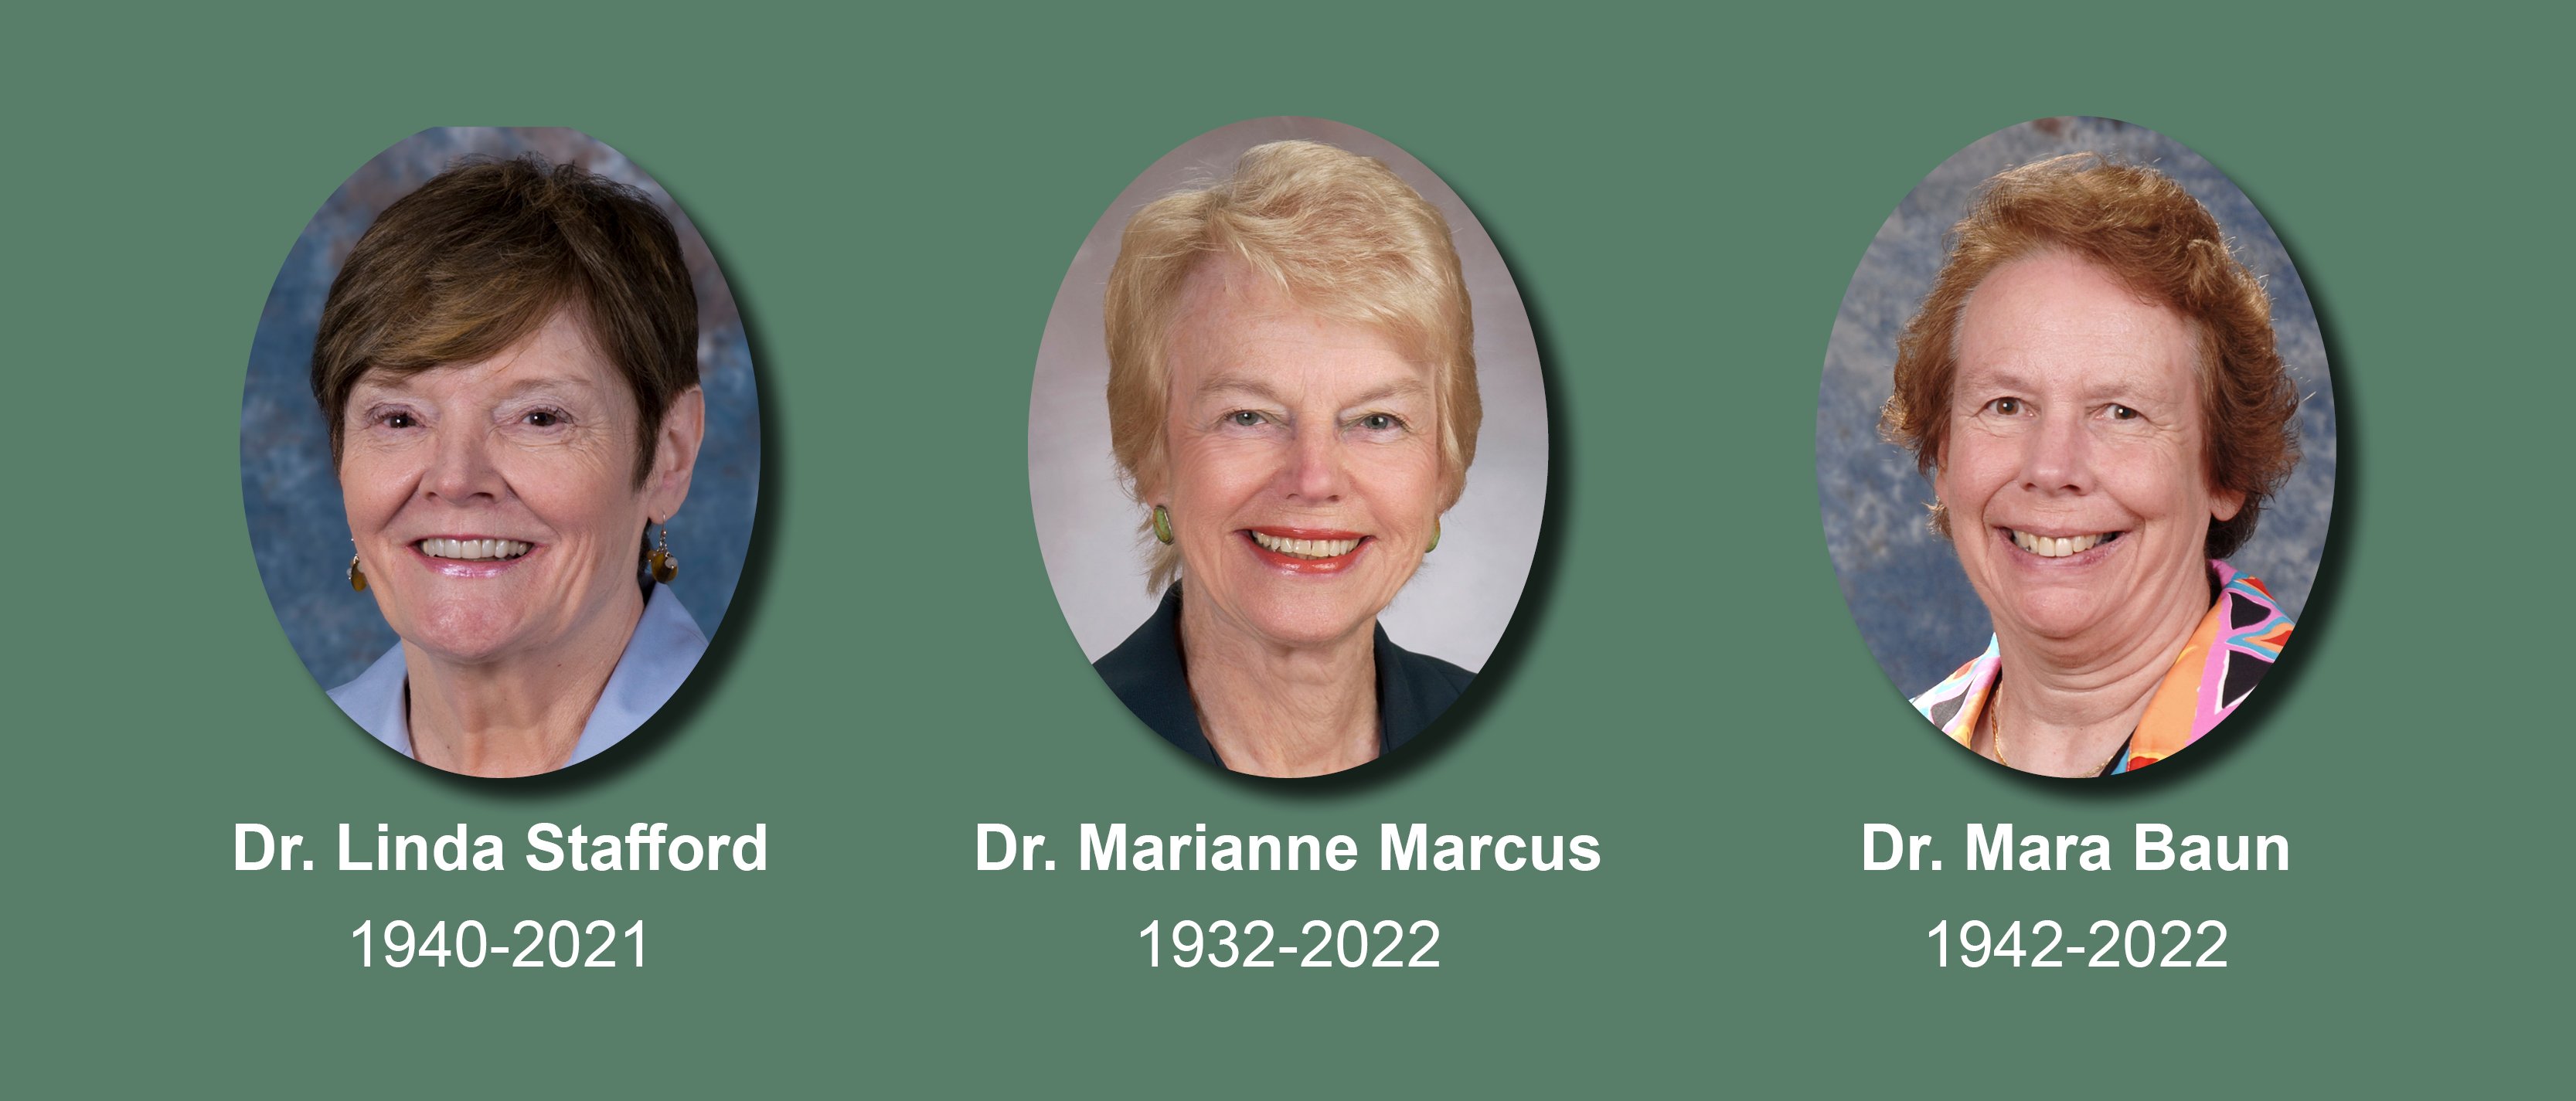 Dr. Linda Stafford, 1940-2021; Dr. Marianne Marcus, 1932-2022; Dr. Mara Baun, 1942-2022